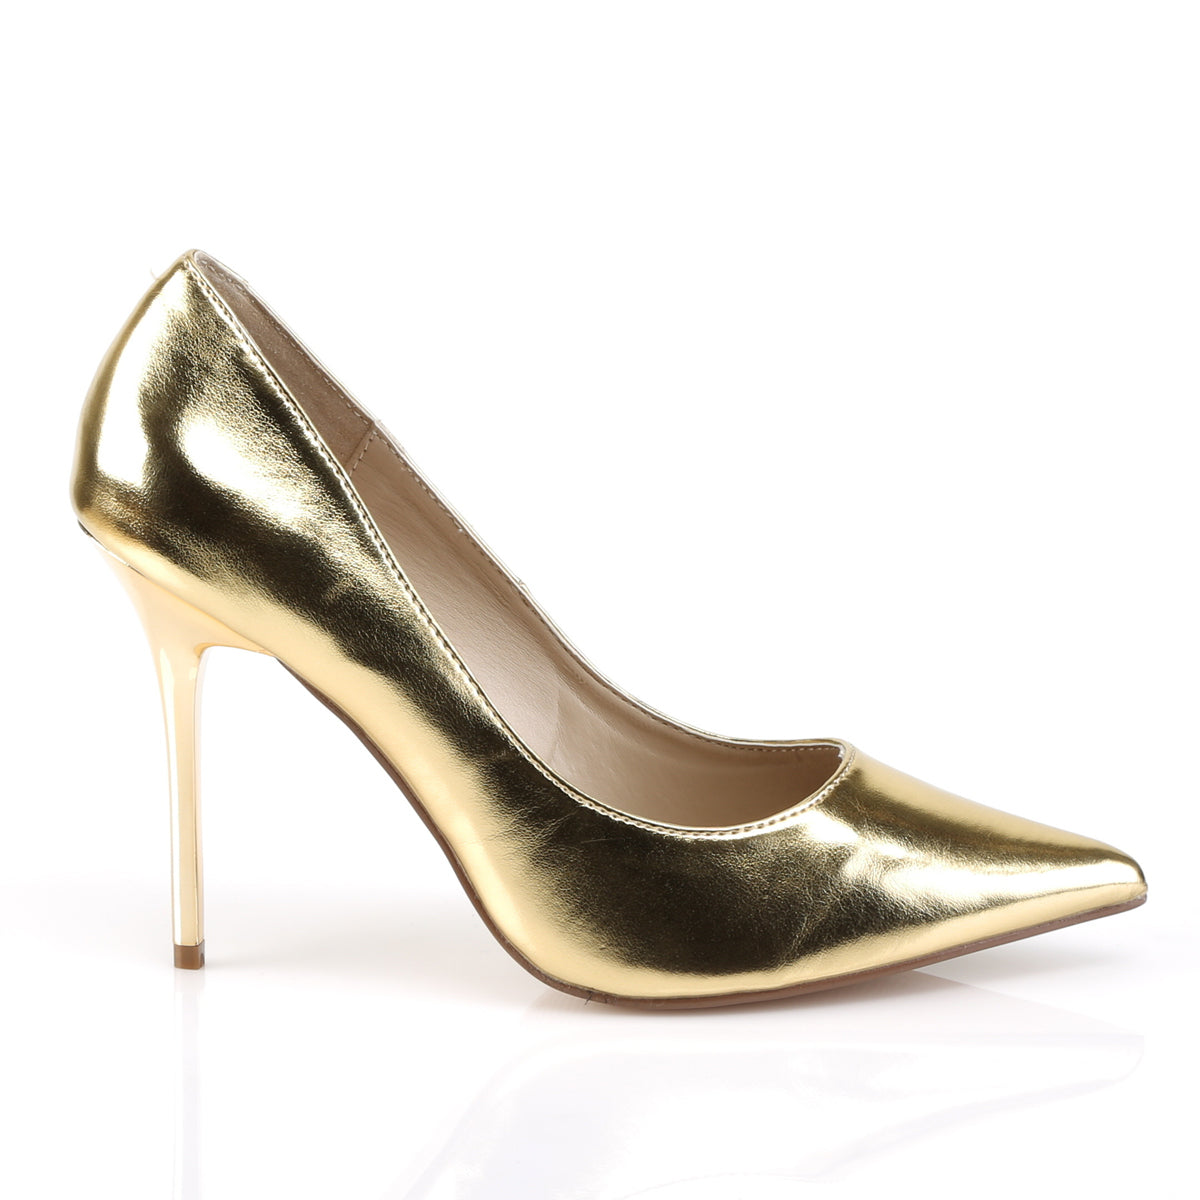 Eugene Gold High Heels - Chic Jute Platform Sandals